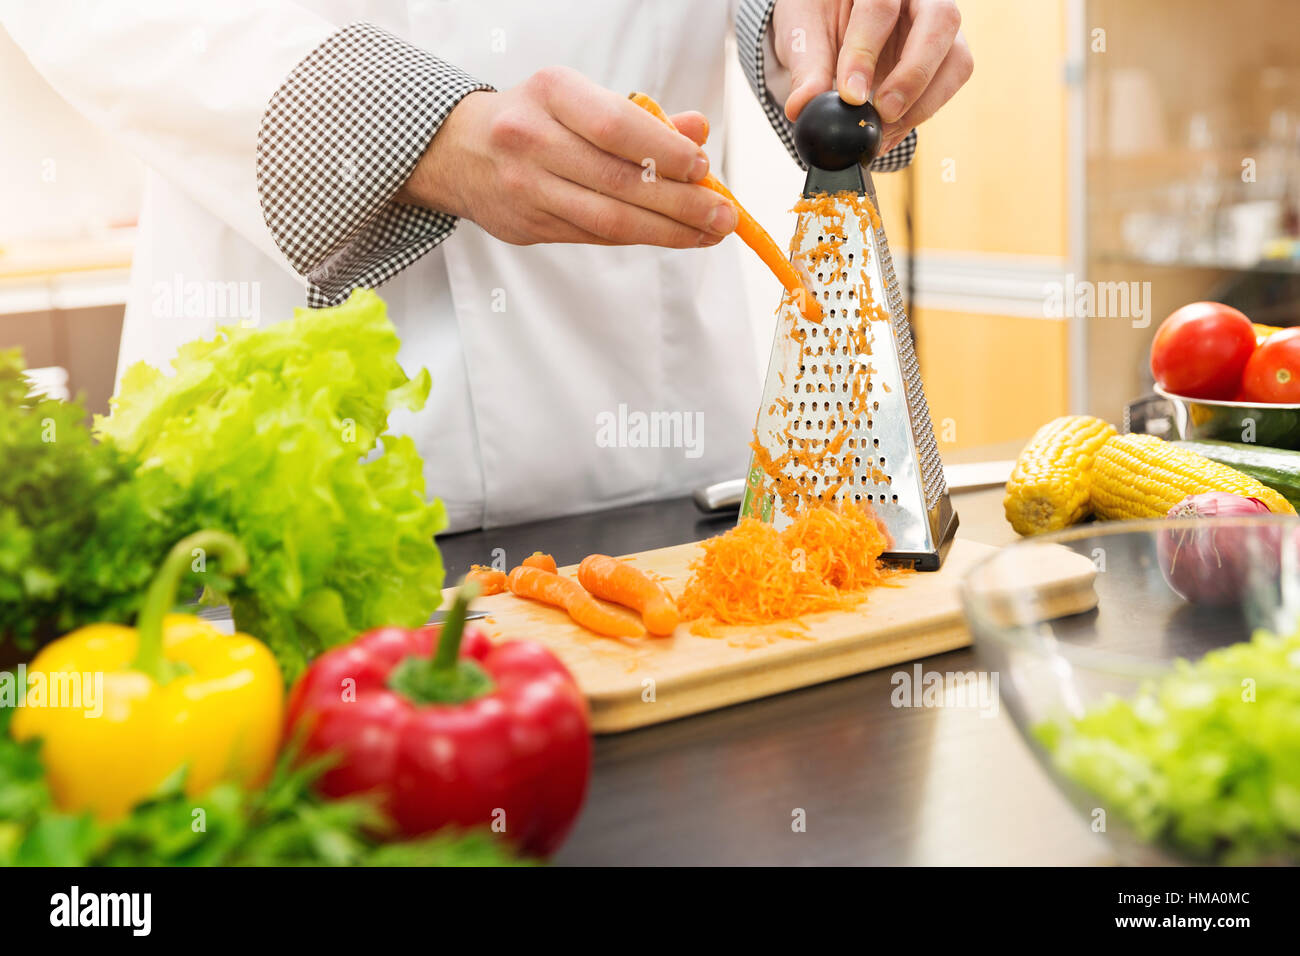 Râper les carottes avec chef de cuisine râpe Banque D'Images